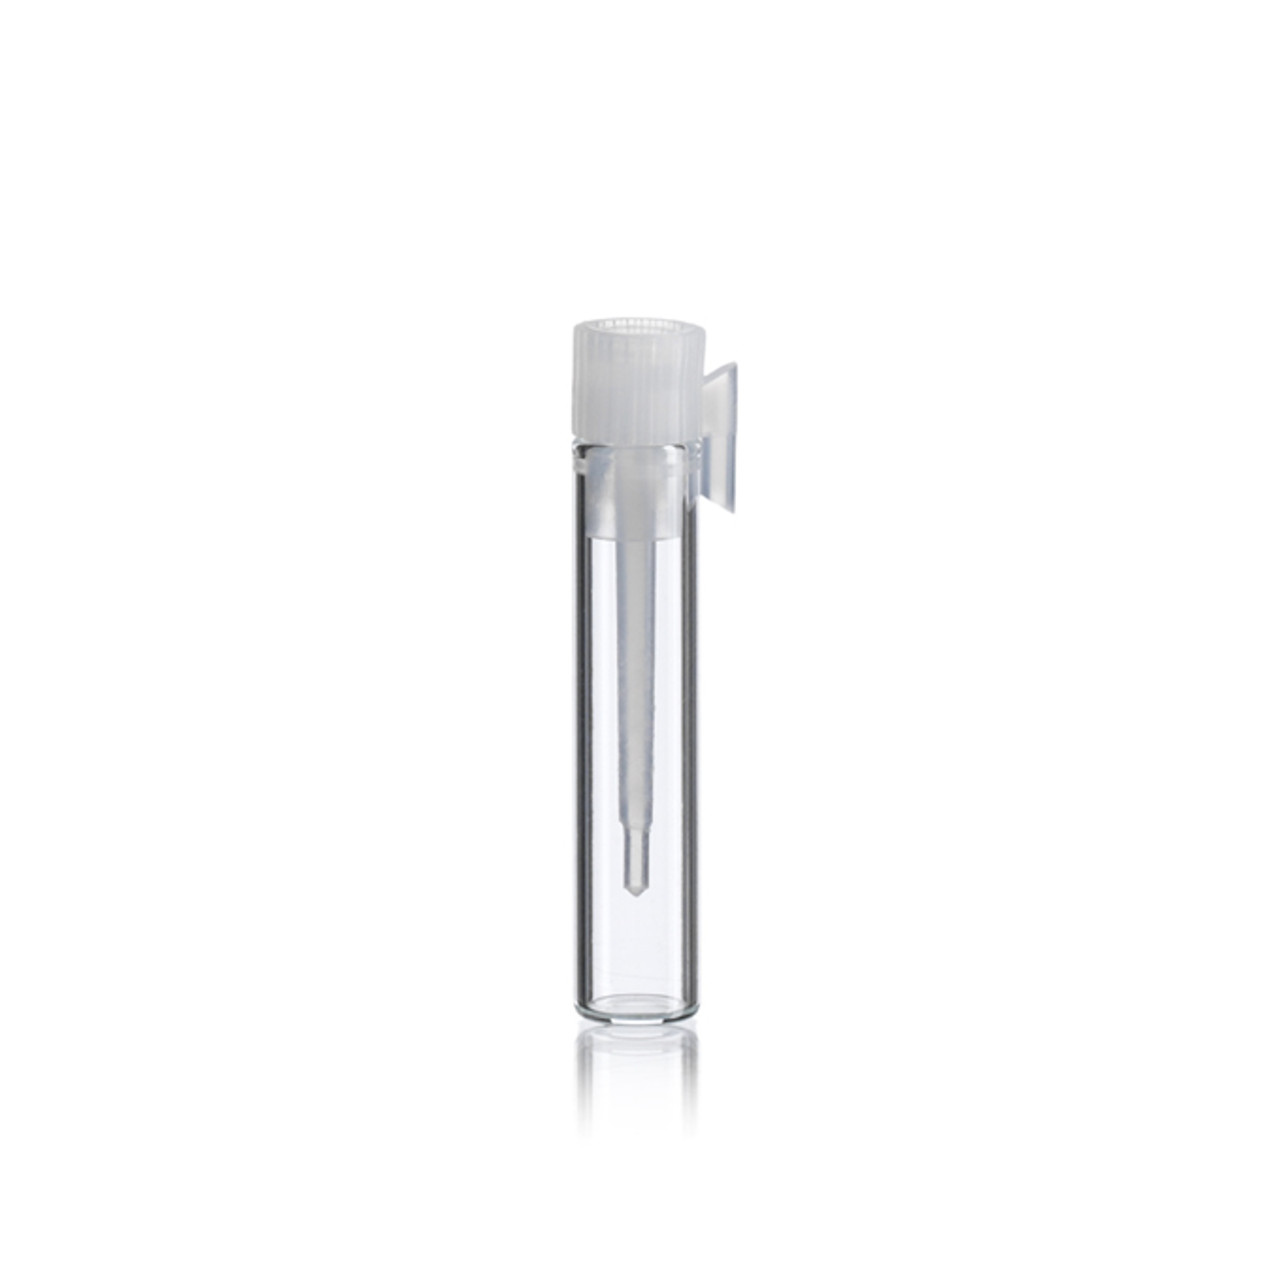 8 x 35 mm Perfume Sampler Vial Inc. Plug